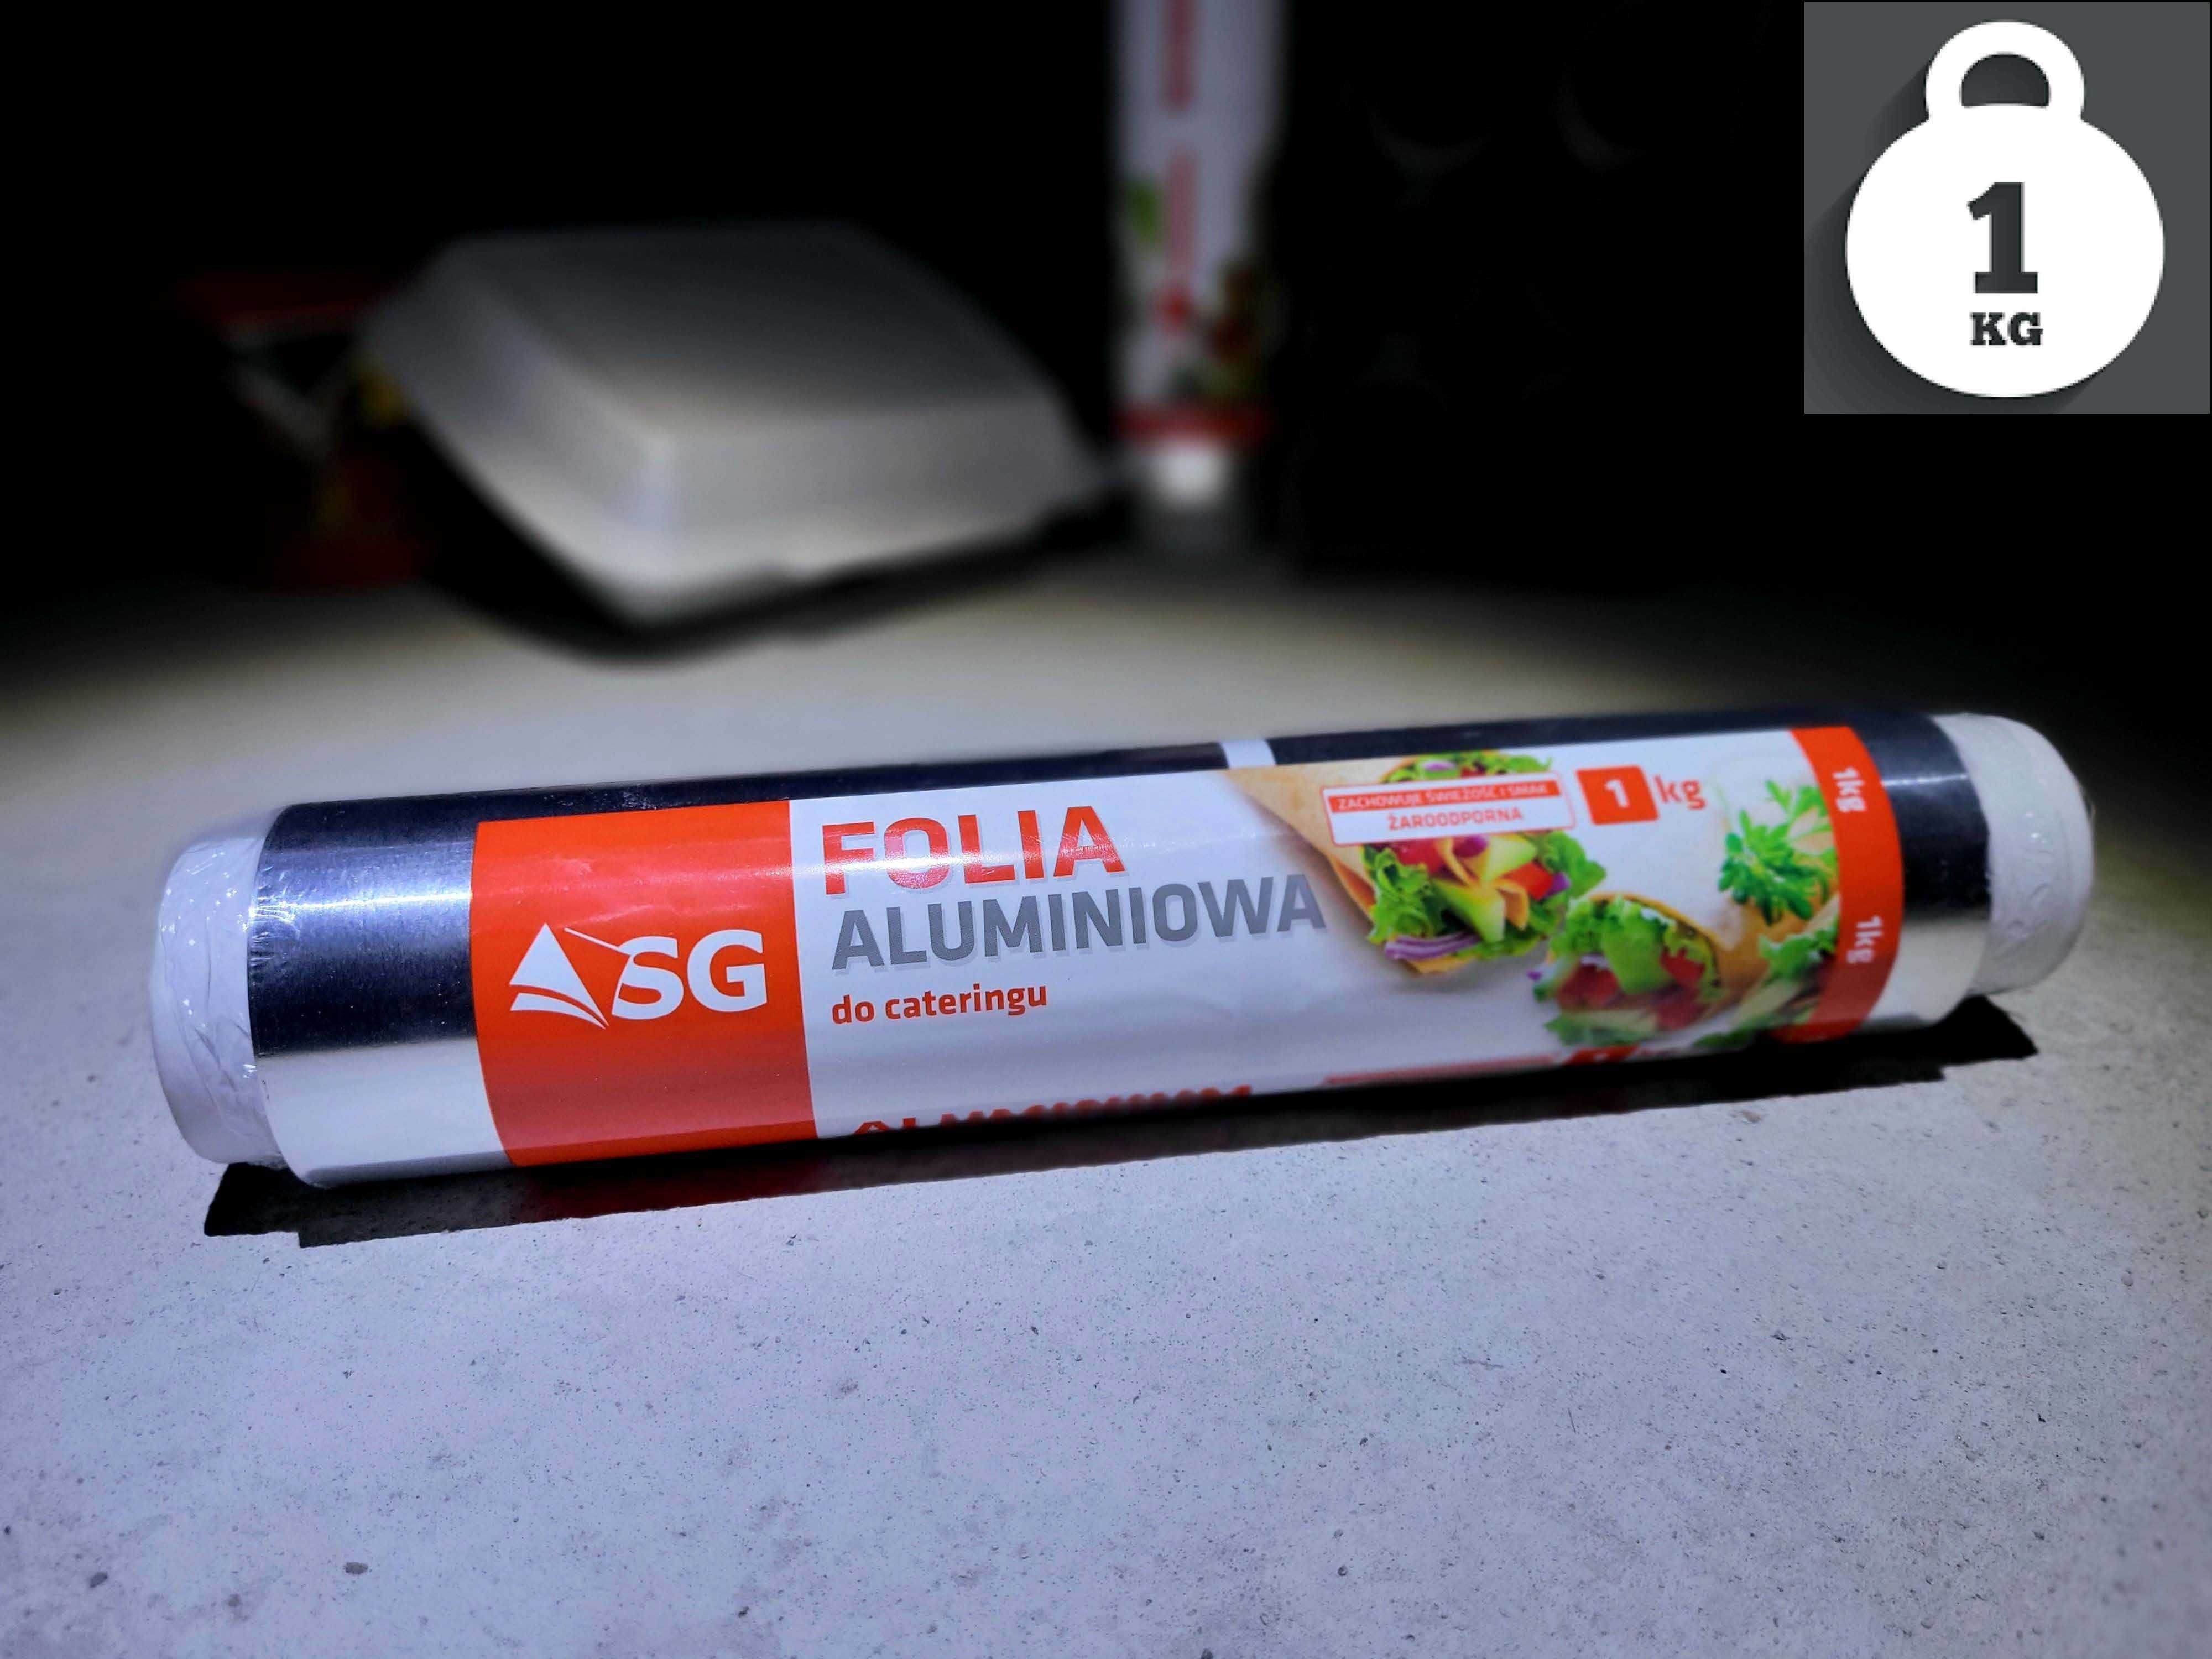 Folia aluminiowa 1 kg spożywcza gastronomiczna cateringowa -GRUBA